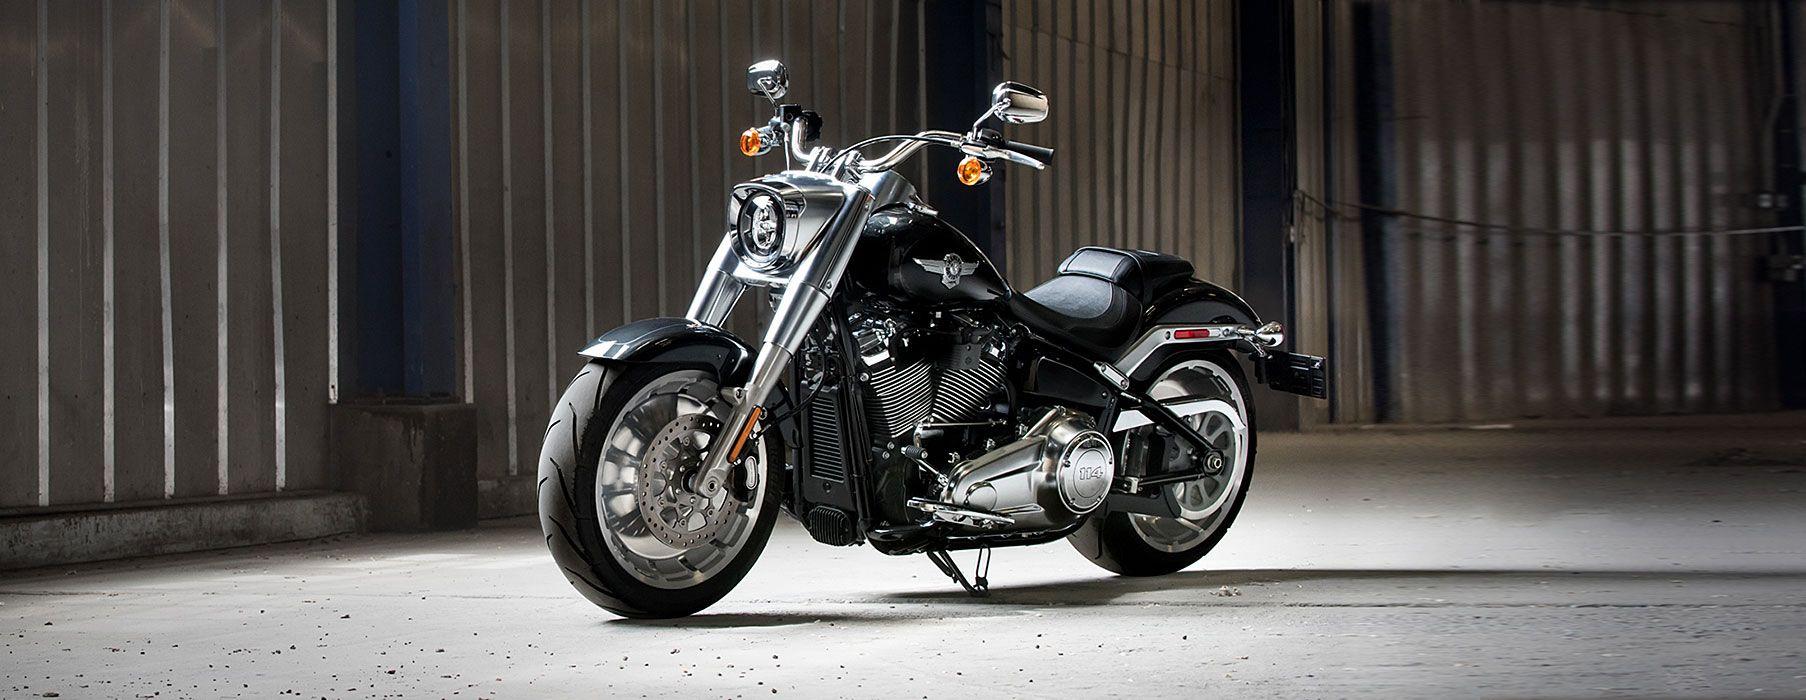 Fat Boy® 114 Motorcycles. Thunder Road Harley Davidson®